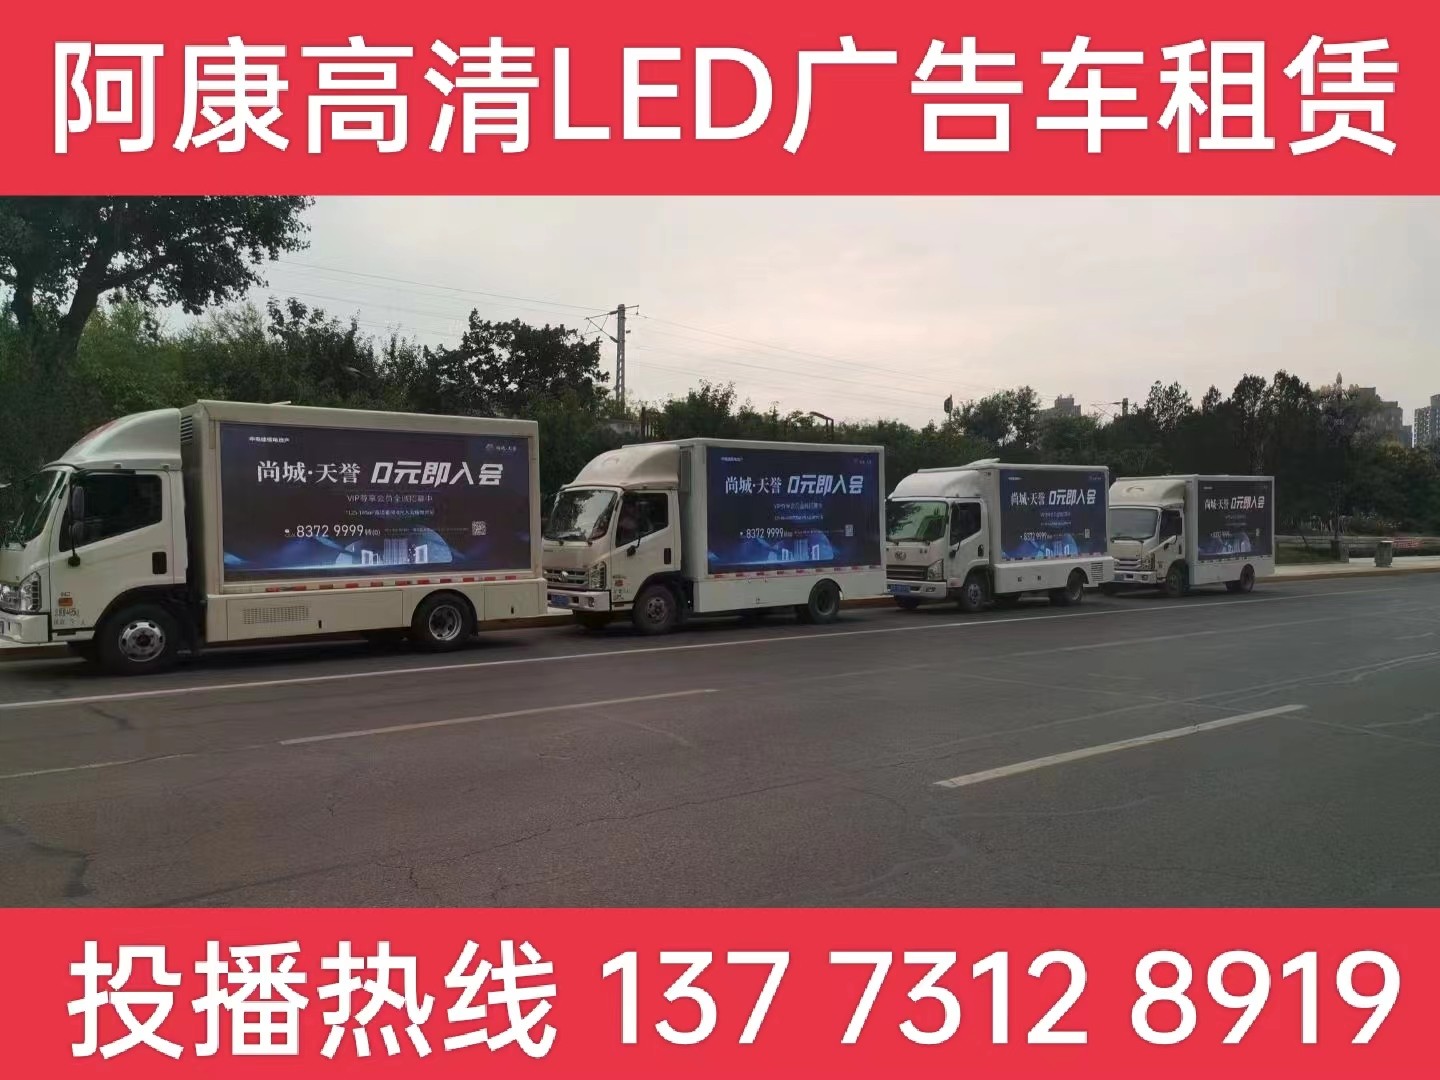 丹阳LED广告车出租-某房产公司效果展示